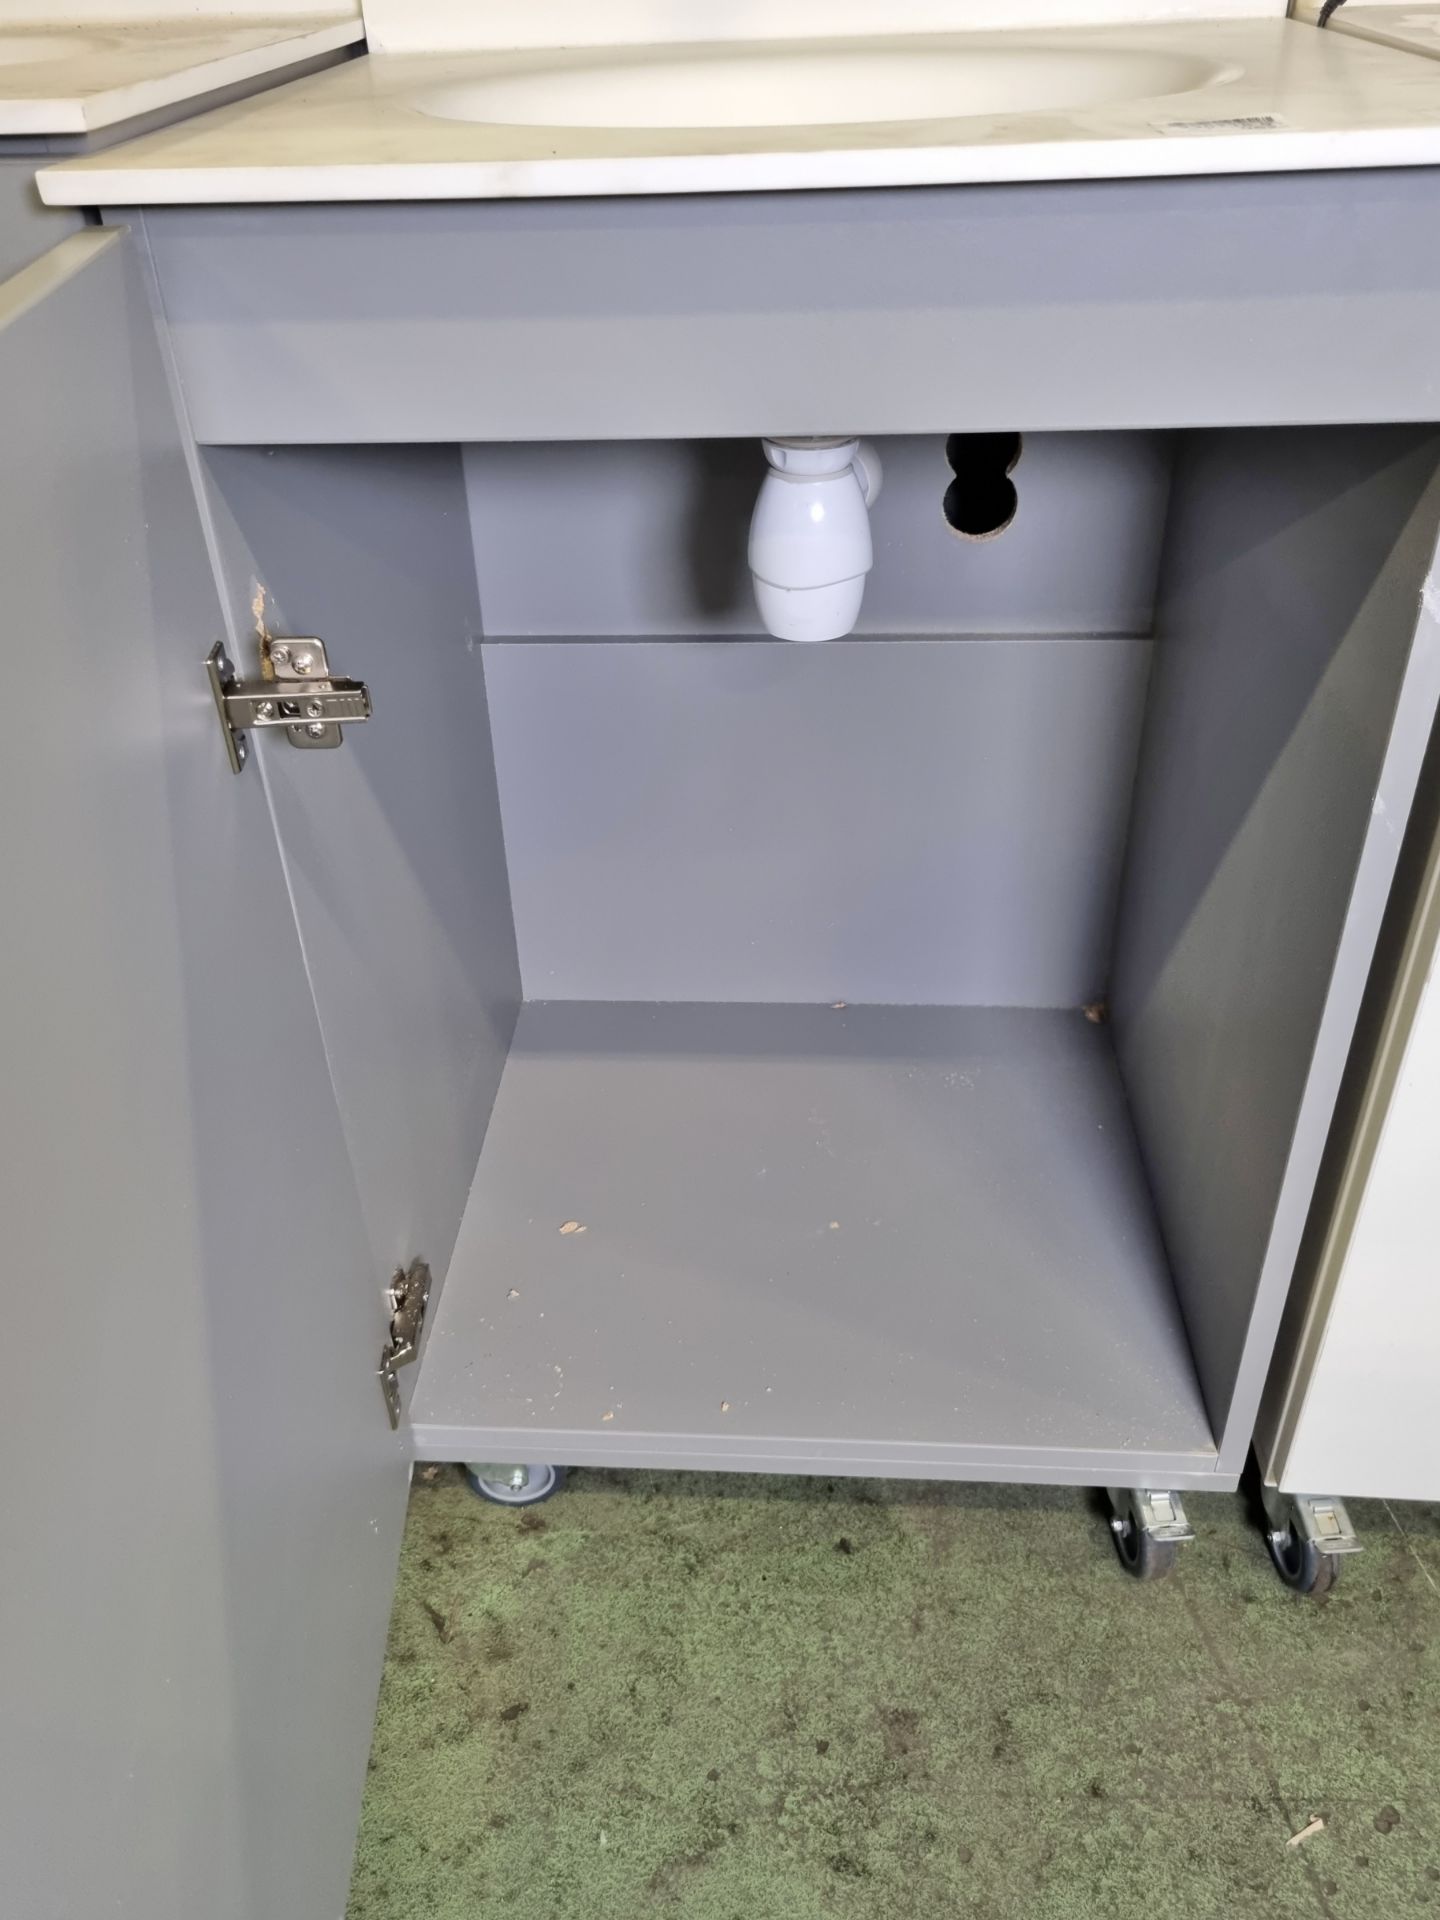 Portable hand wash station with under counter storage & Armitage Shanks mixer tap - Bild 3 aus 4